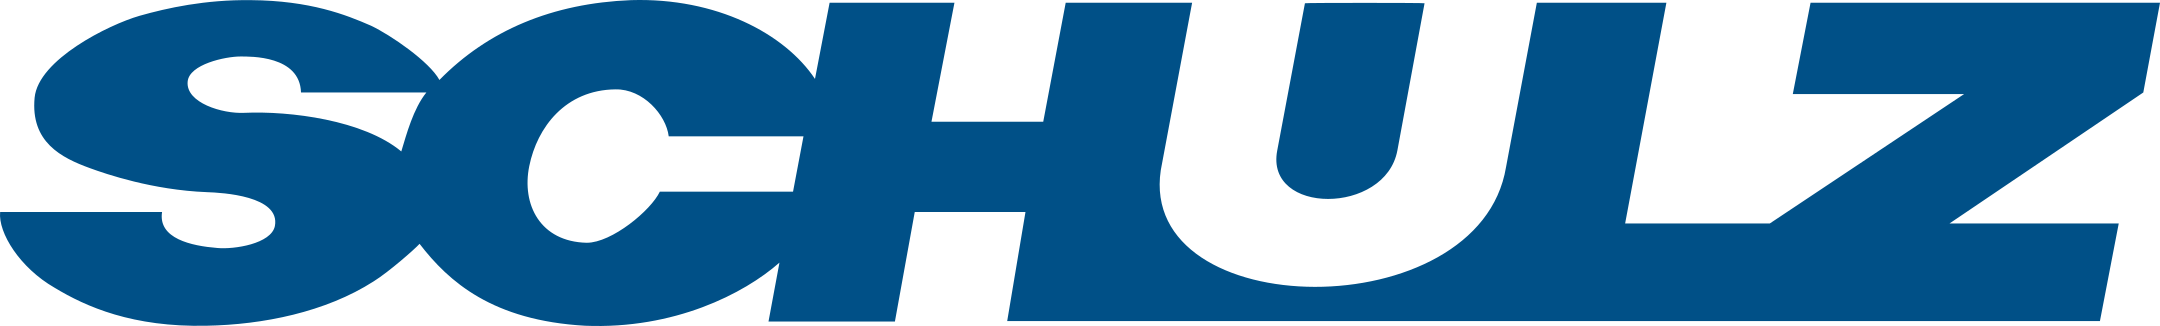 schulz-logo-1